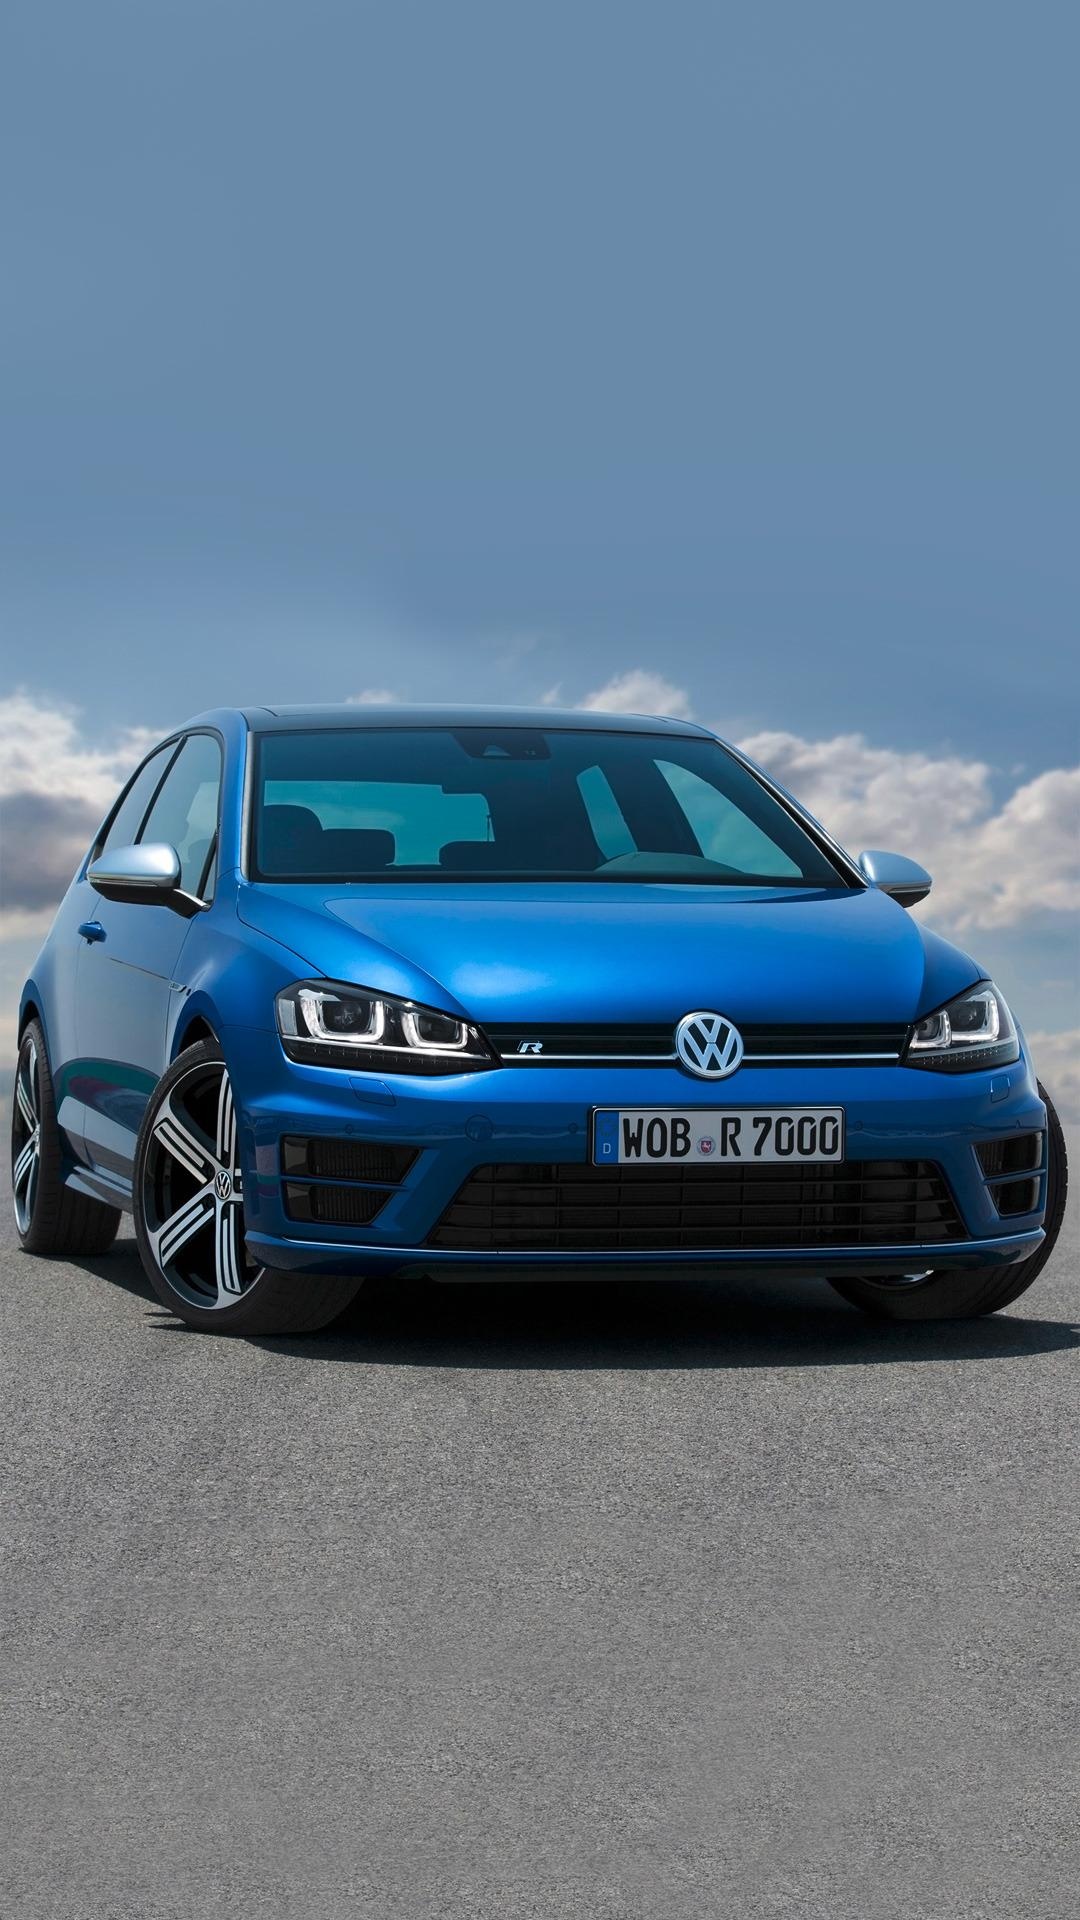 Volkswagen Golf, Volkswagen phone wallpapers, Free backgrounds, Volkswagen, 1080x1920 Full HD Handy